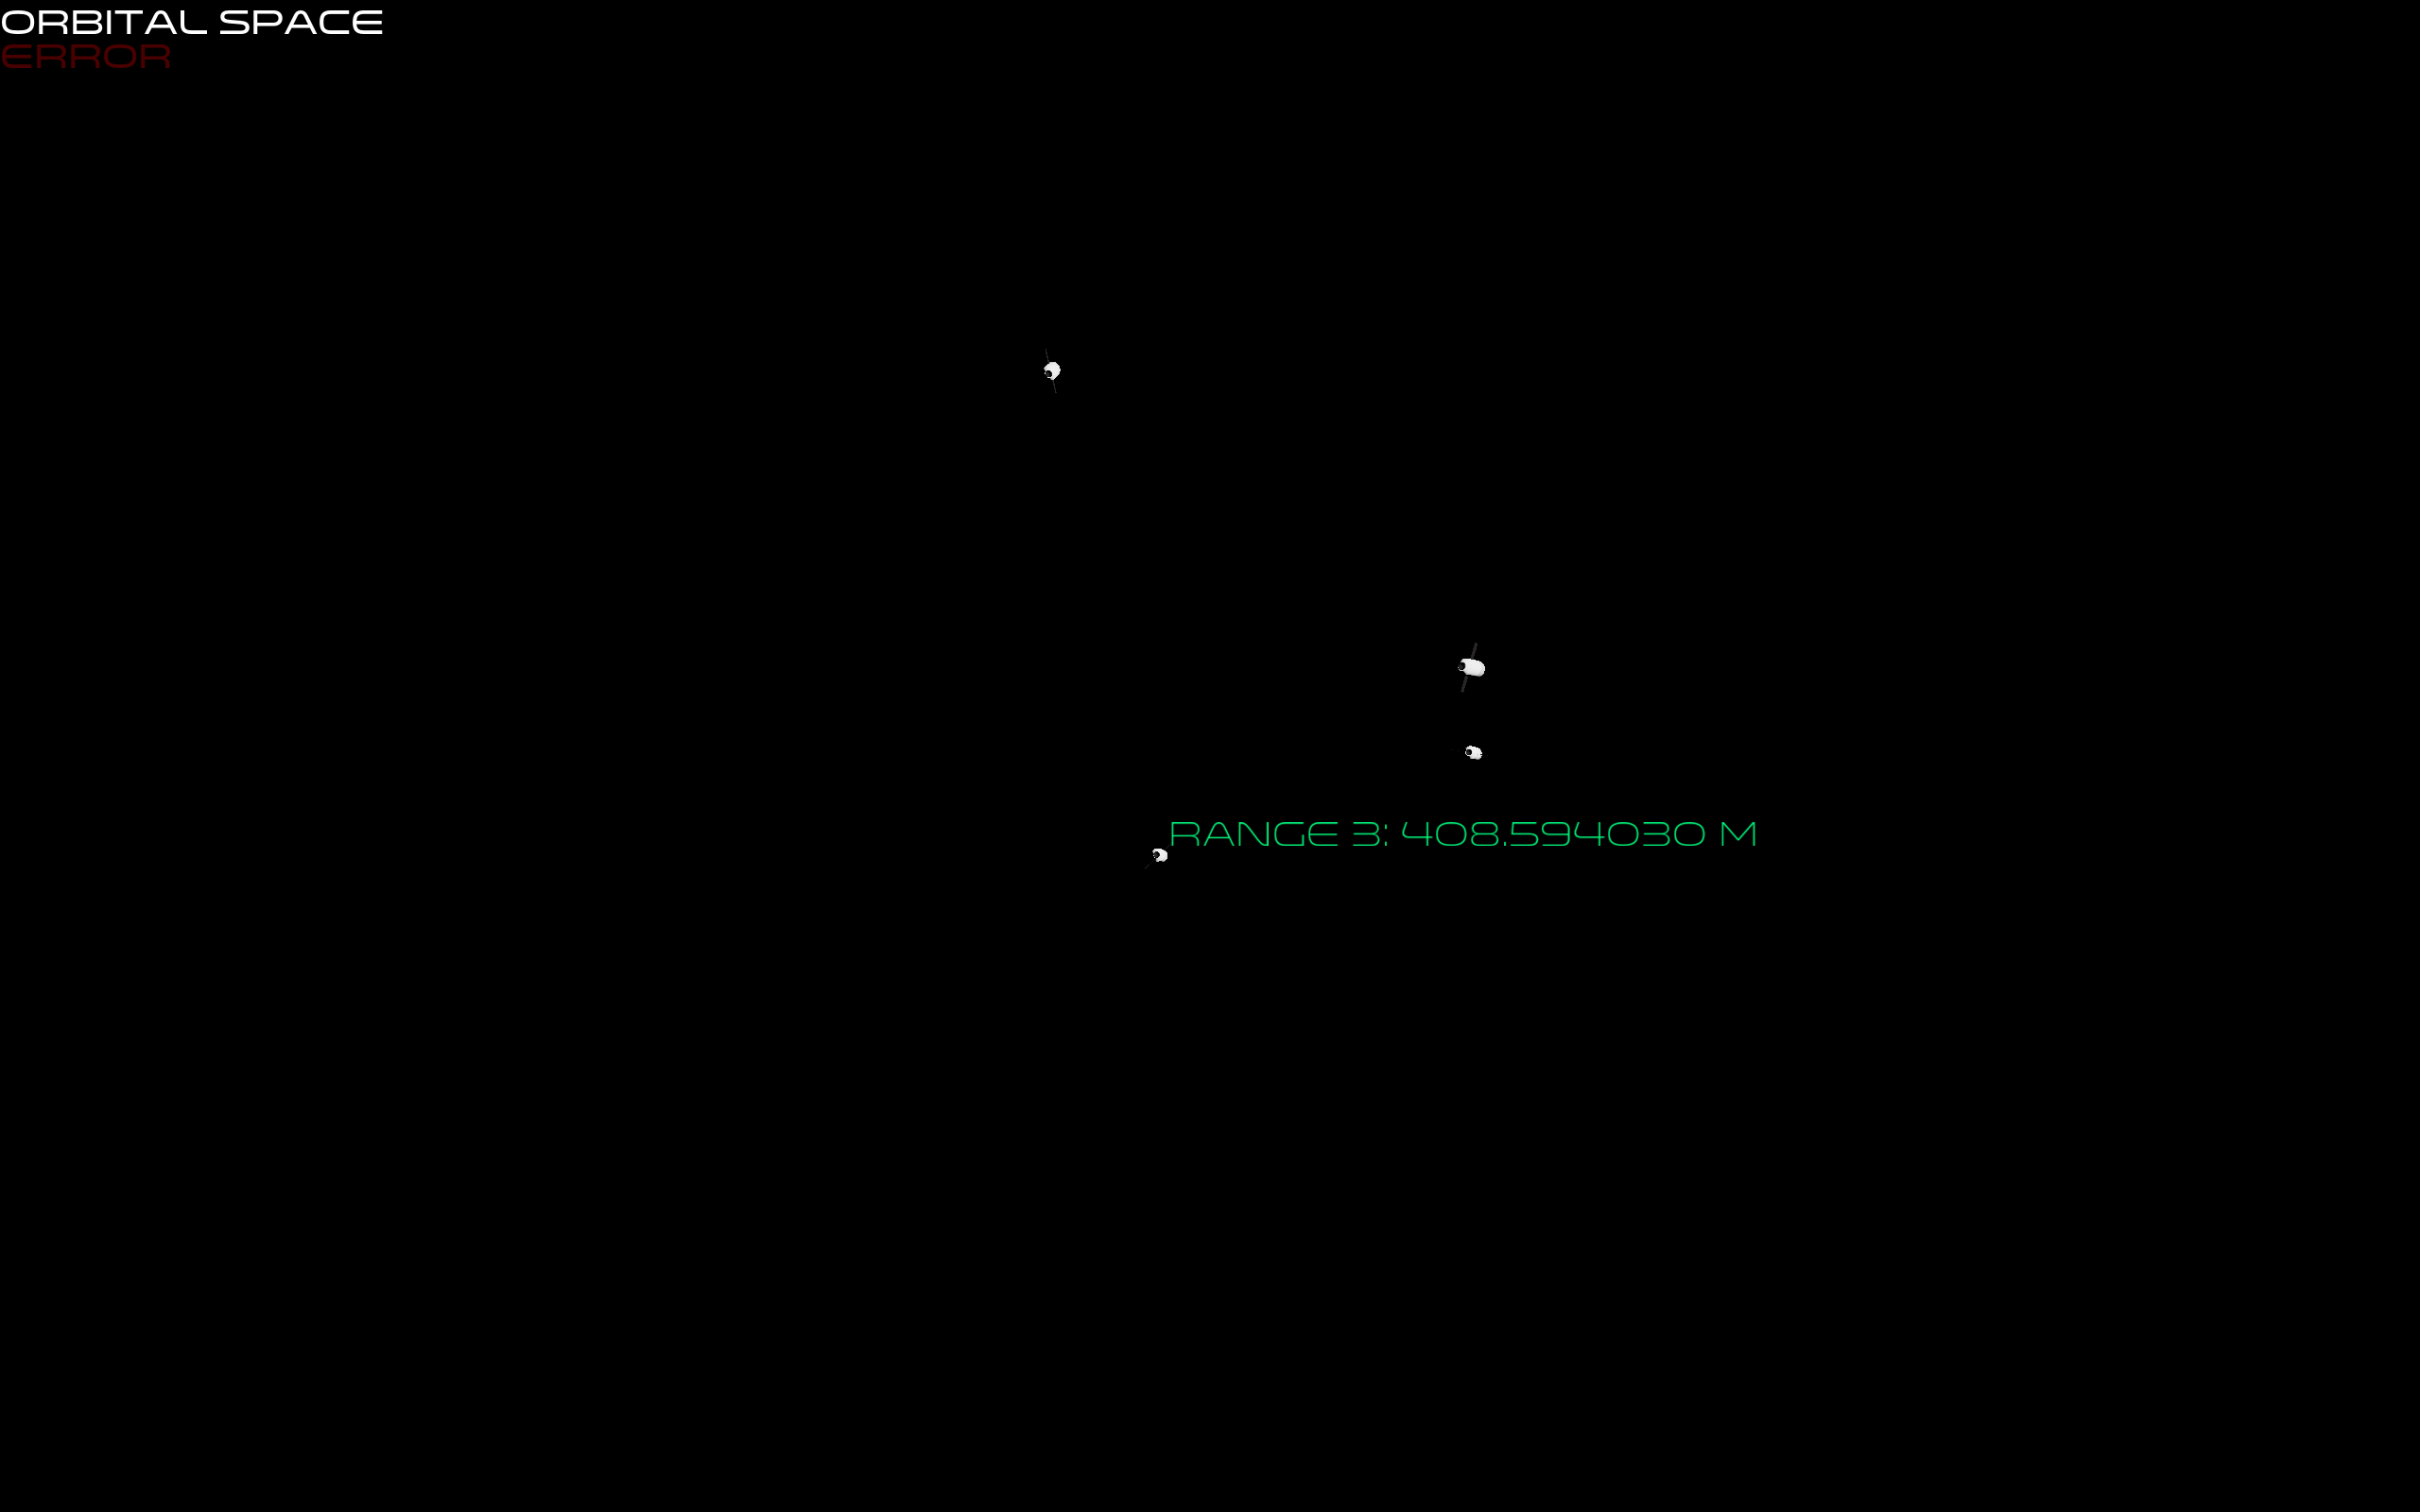 Screenshot demonstrating text rendering in Orbital Space.